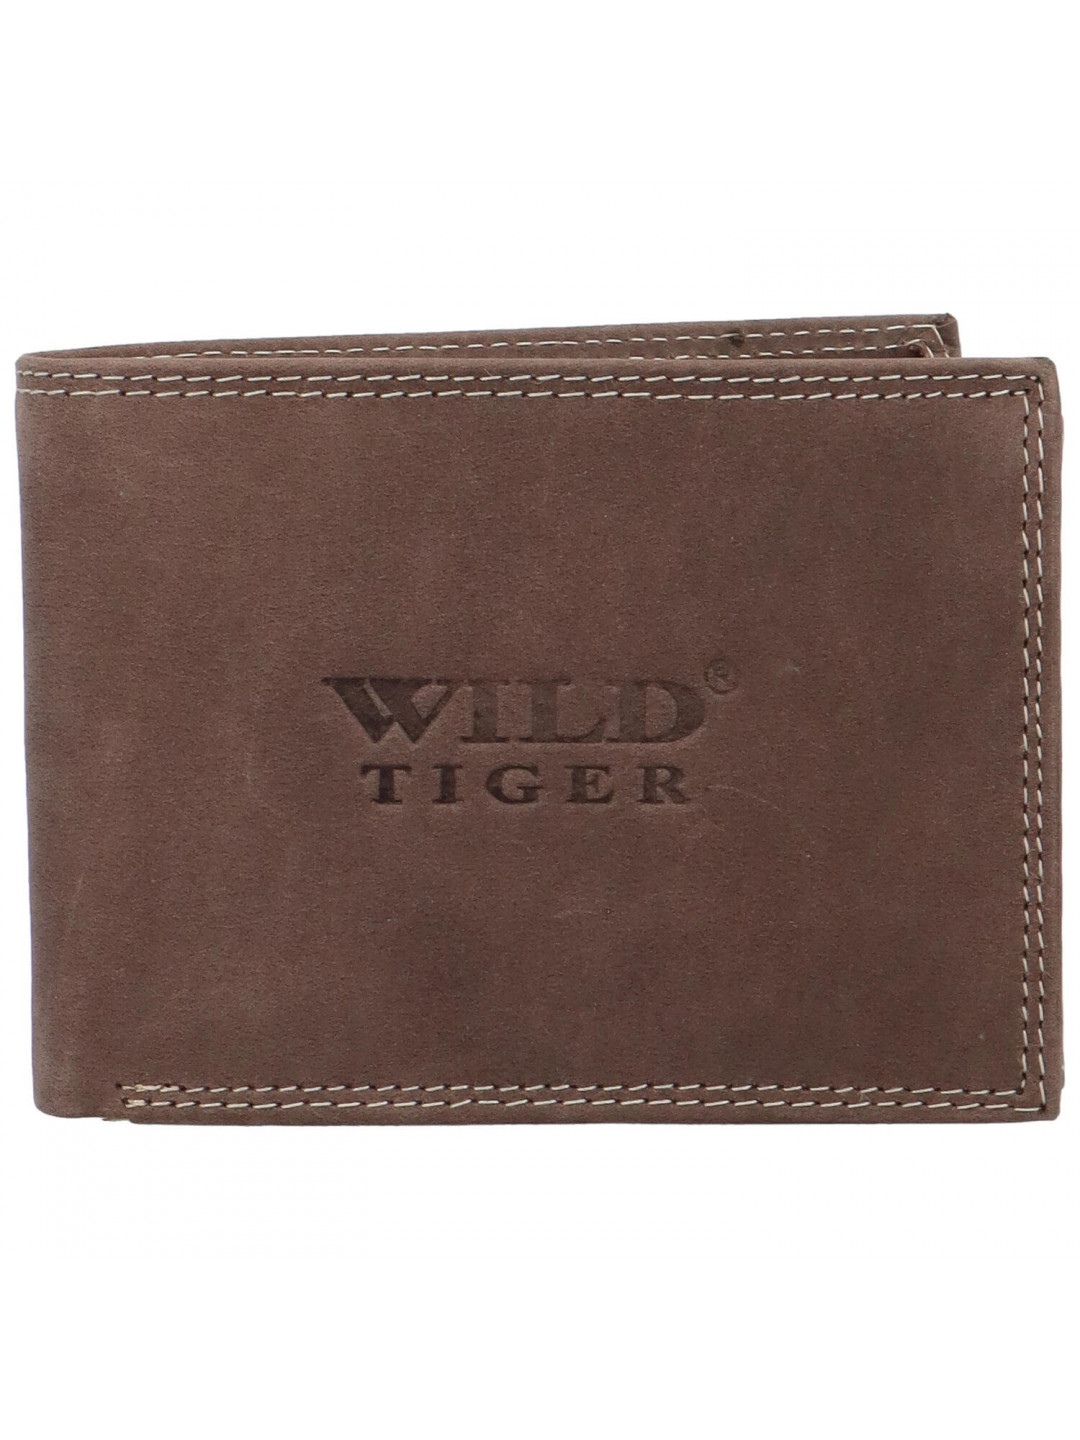 Pánská kožená peněženka tmavě hnědá – Wild Tiger Leonard